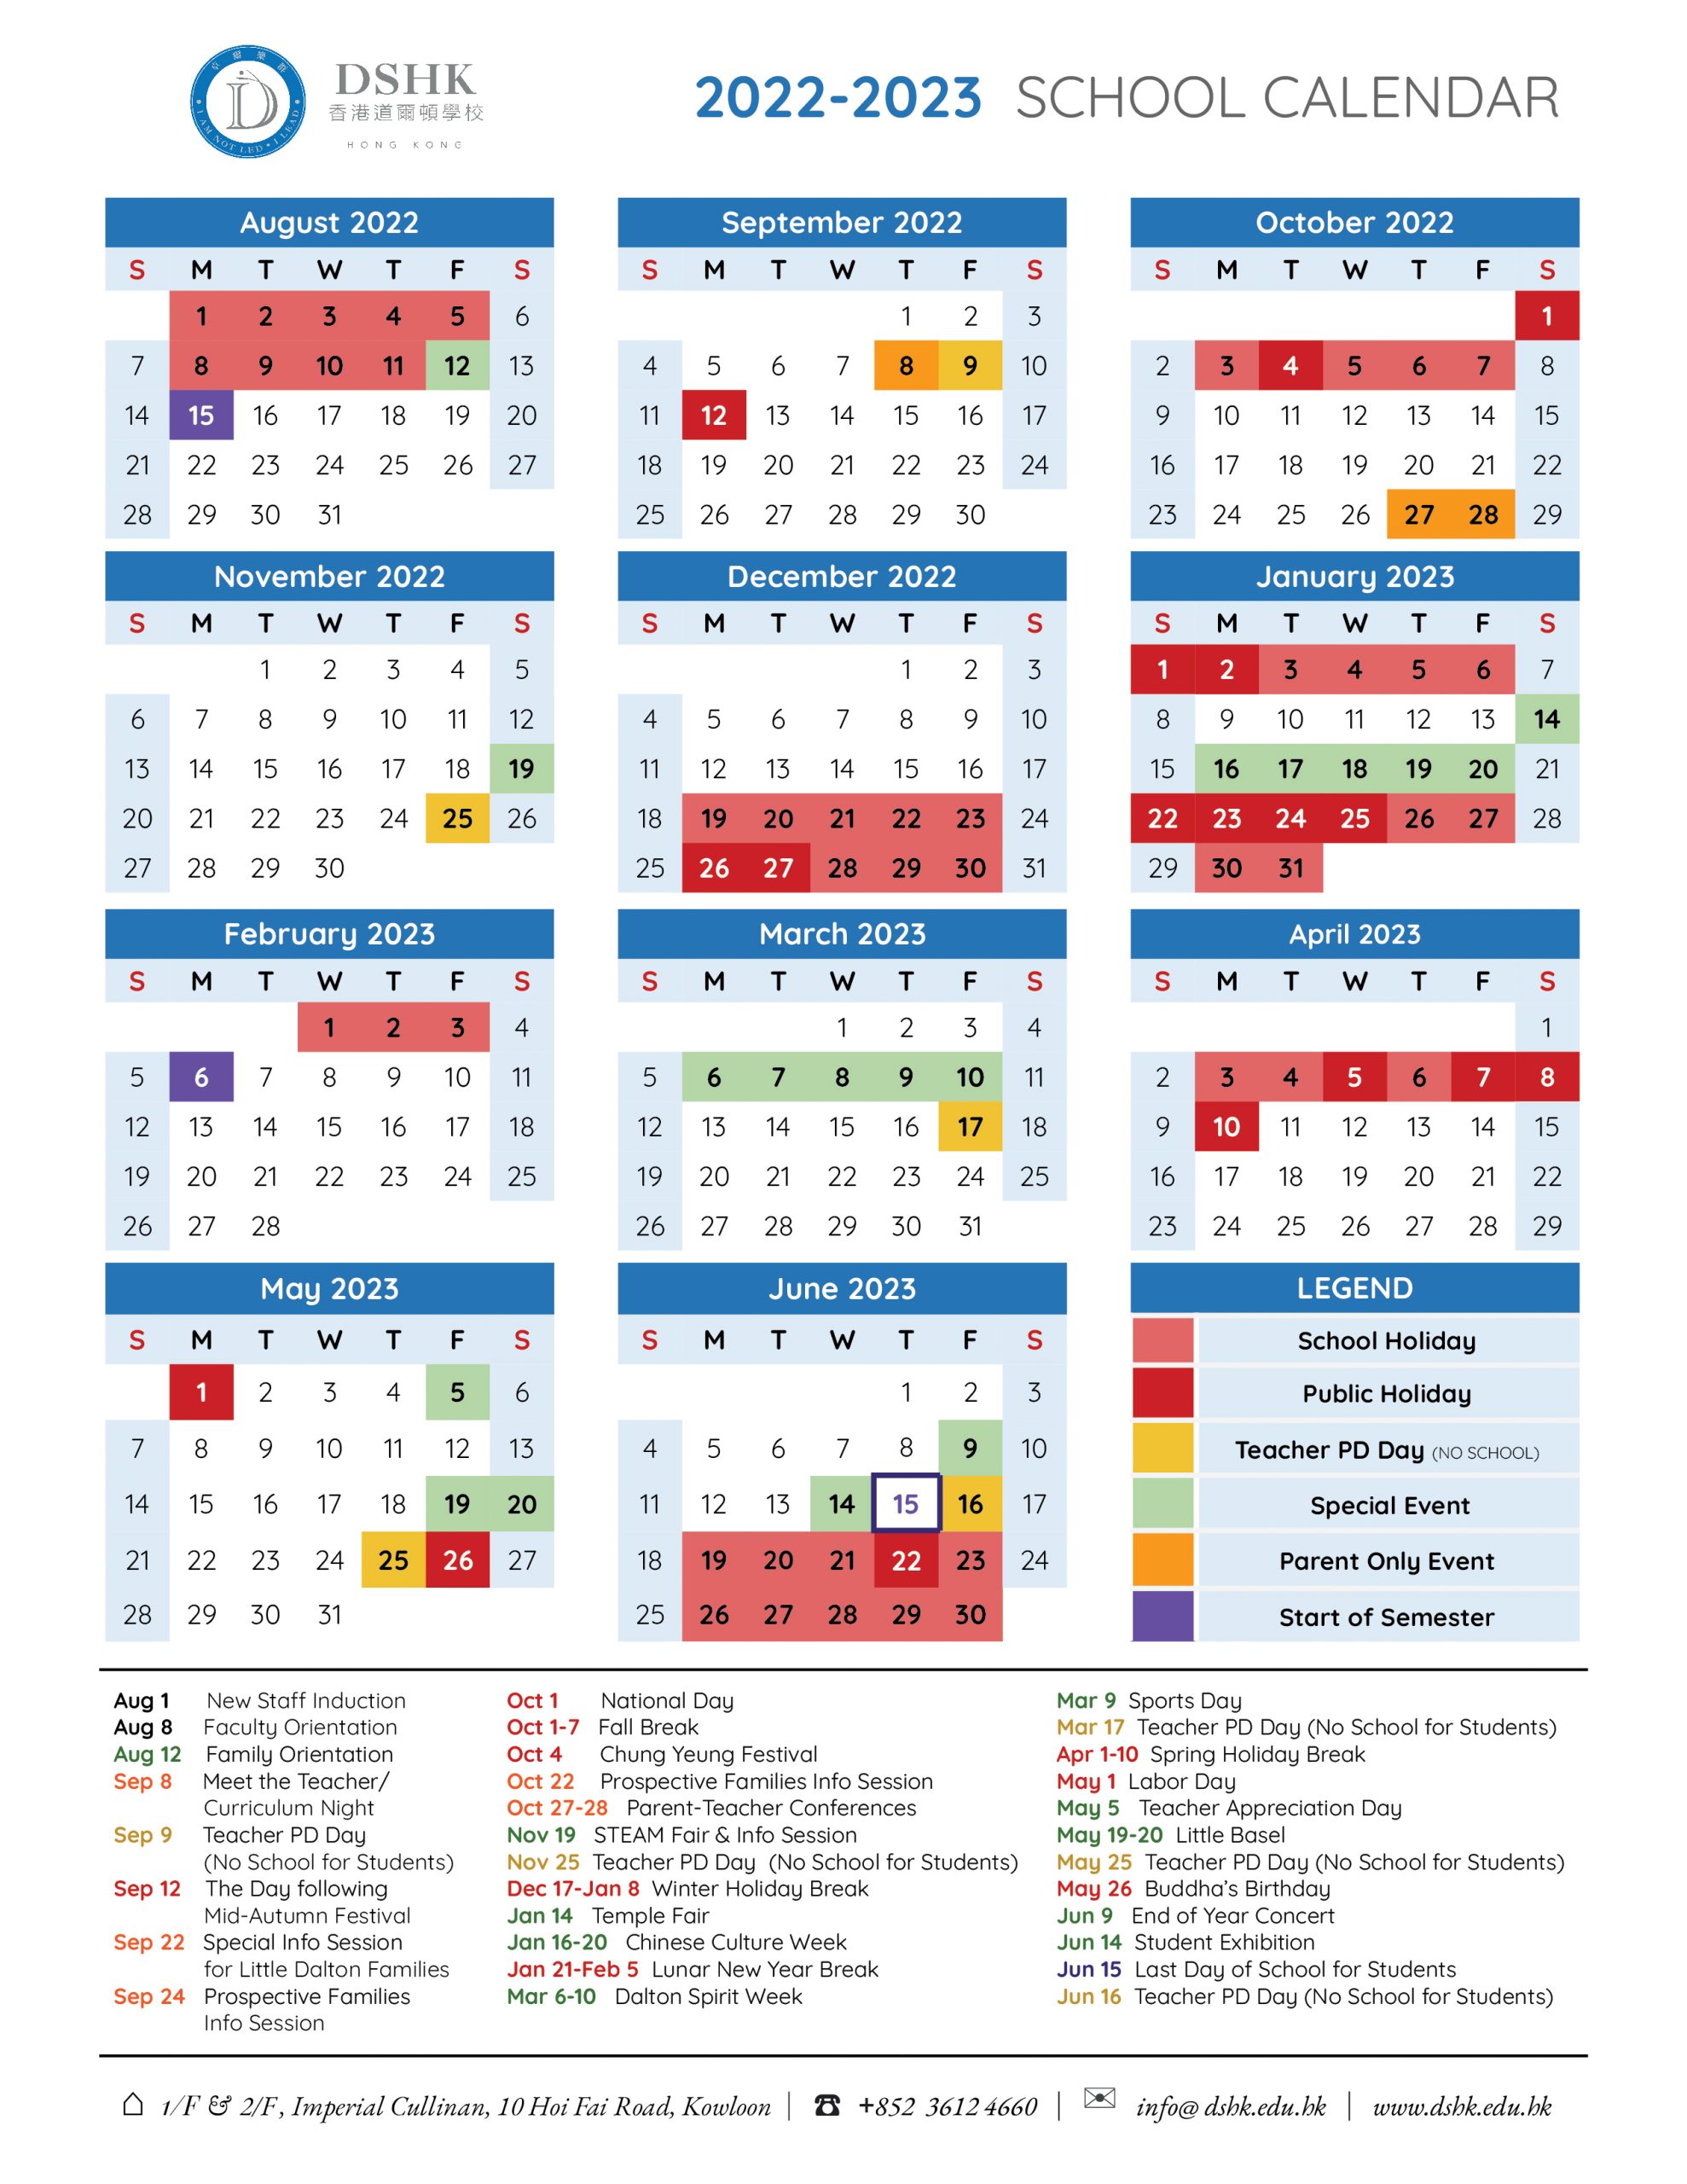 calendar-dalton-school-hong-kong